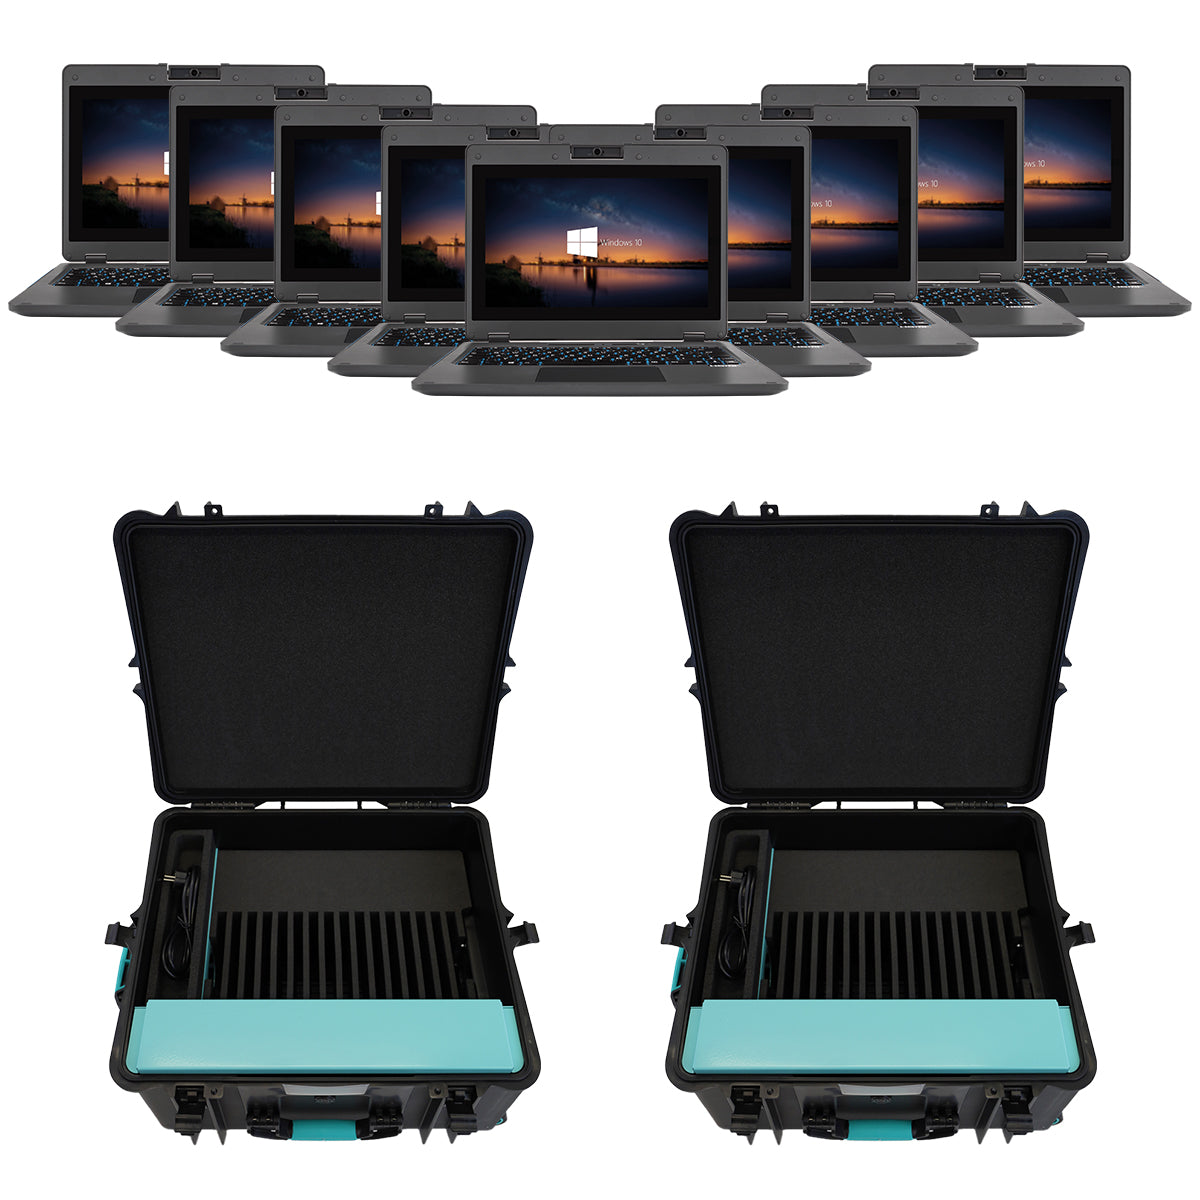 Bild von mehreren scieneo amplio 6 Laptops mit zwei Ladekoffern